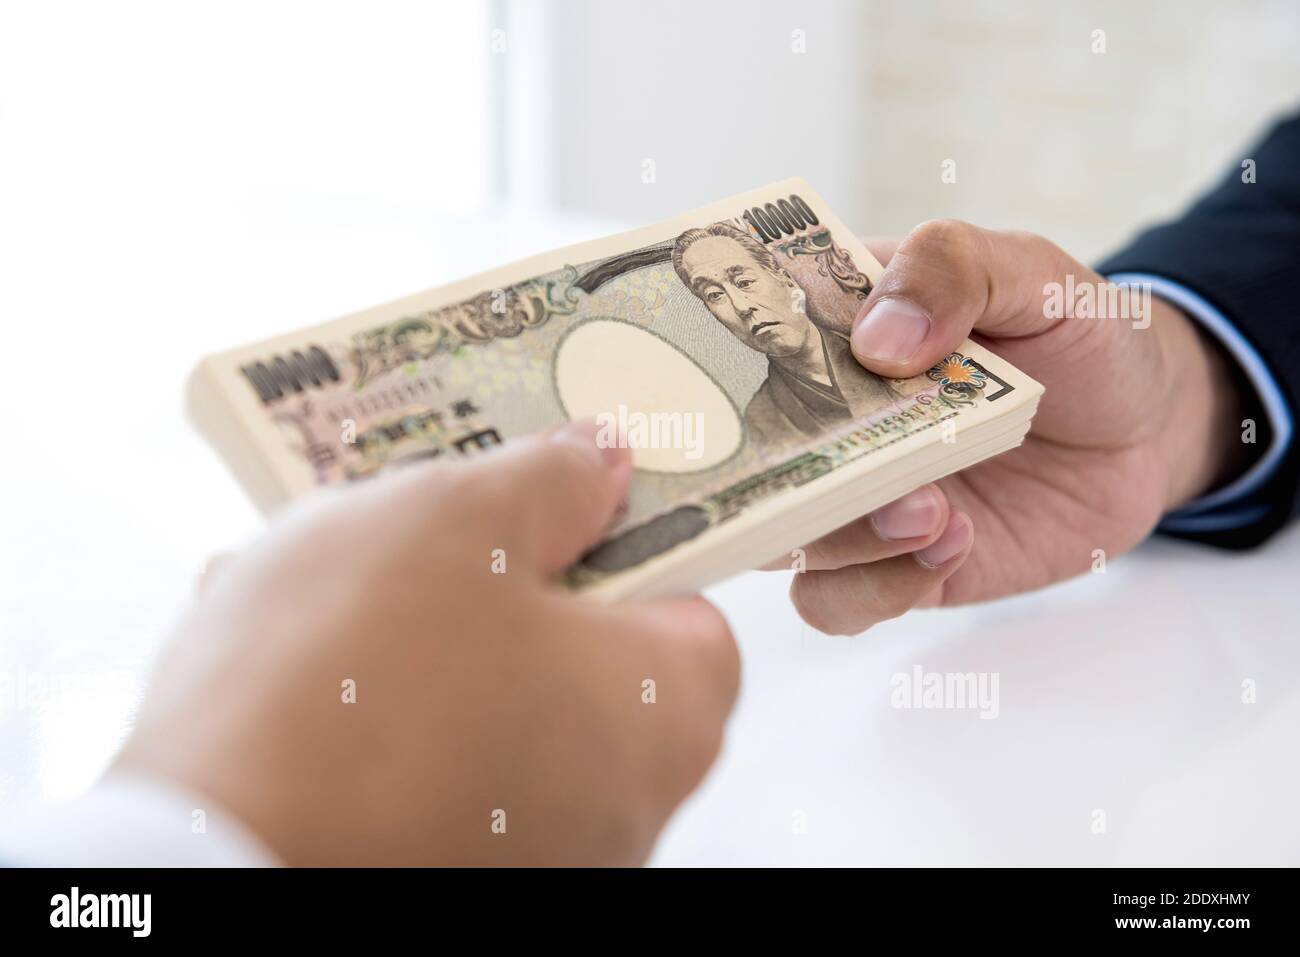 Homme d'affaires donnant de l'argent sous forme de monnaie japonaise yen à son partenaire pour le service rendu - financier, prêt et paiement en espèces concepts Banque D'Images